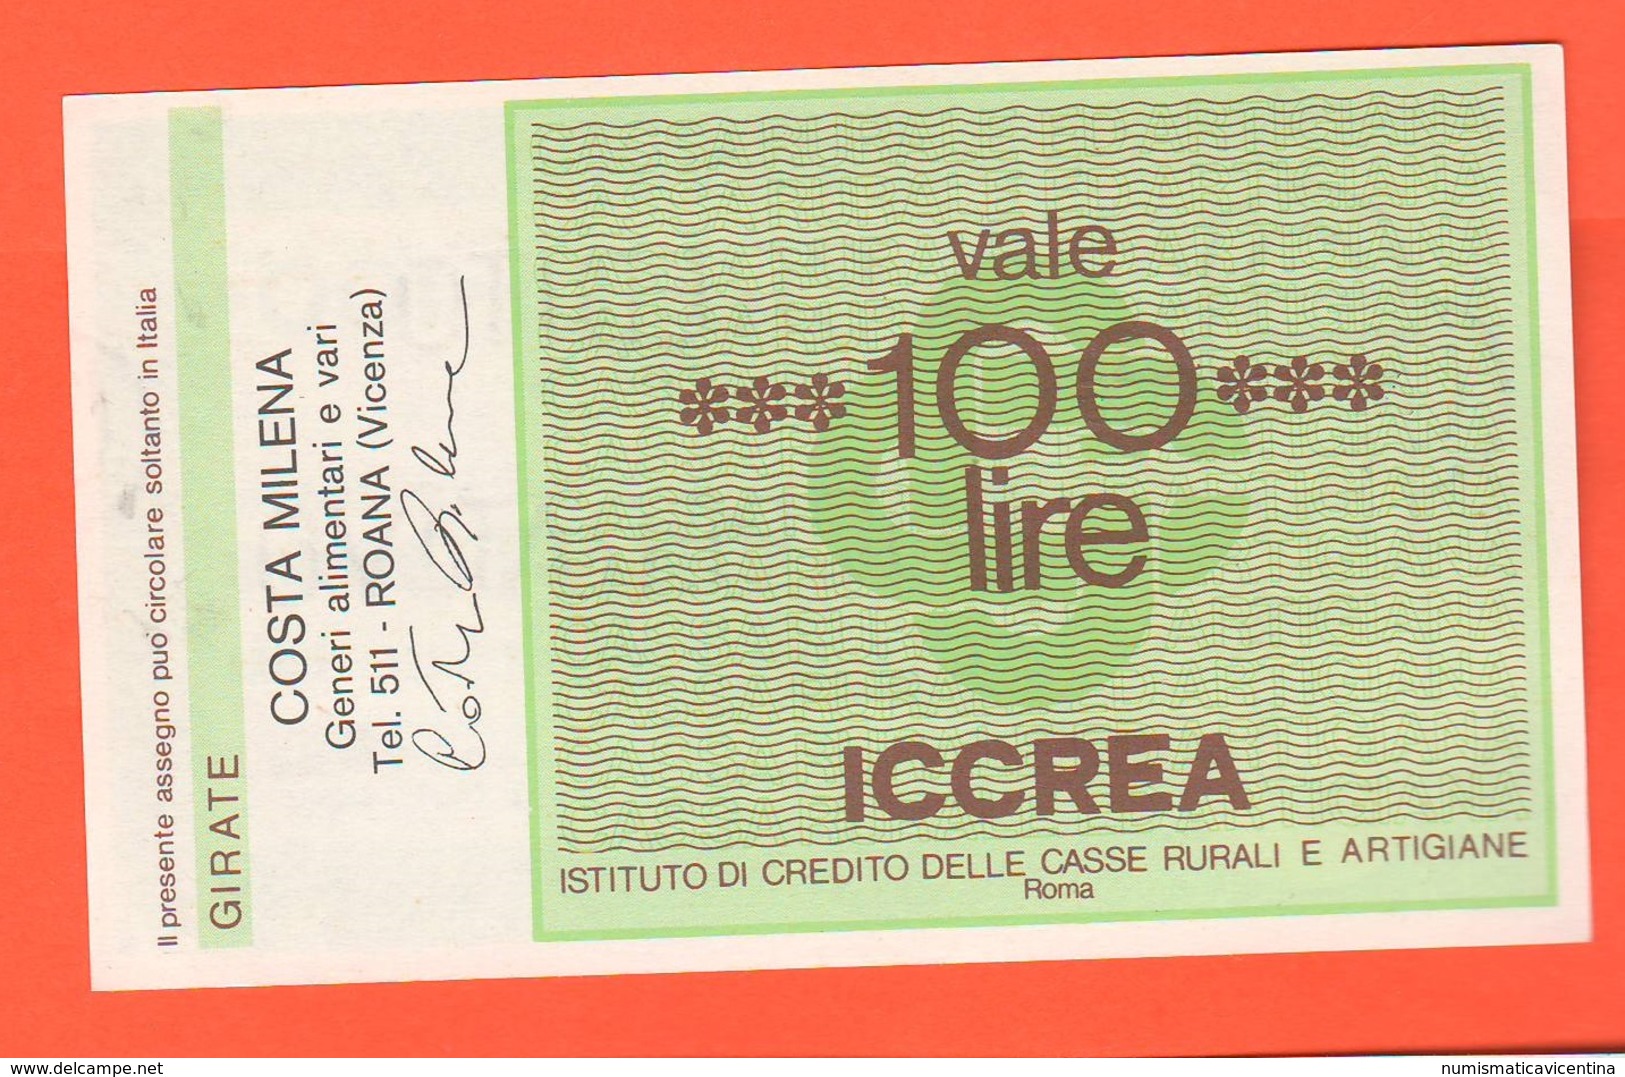 Miniassegno Banca Iccrea Roma 100 Lire 1977 Costa Milena Alimentari Roana Vicenza - [10] Assegni E Miniassegni